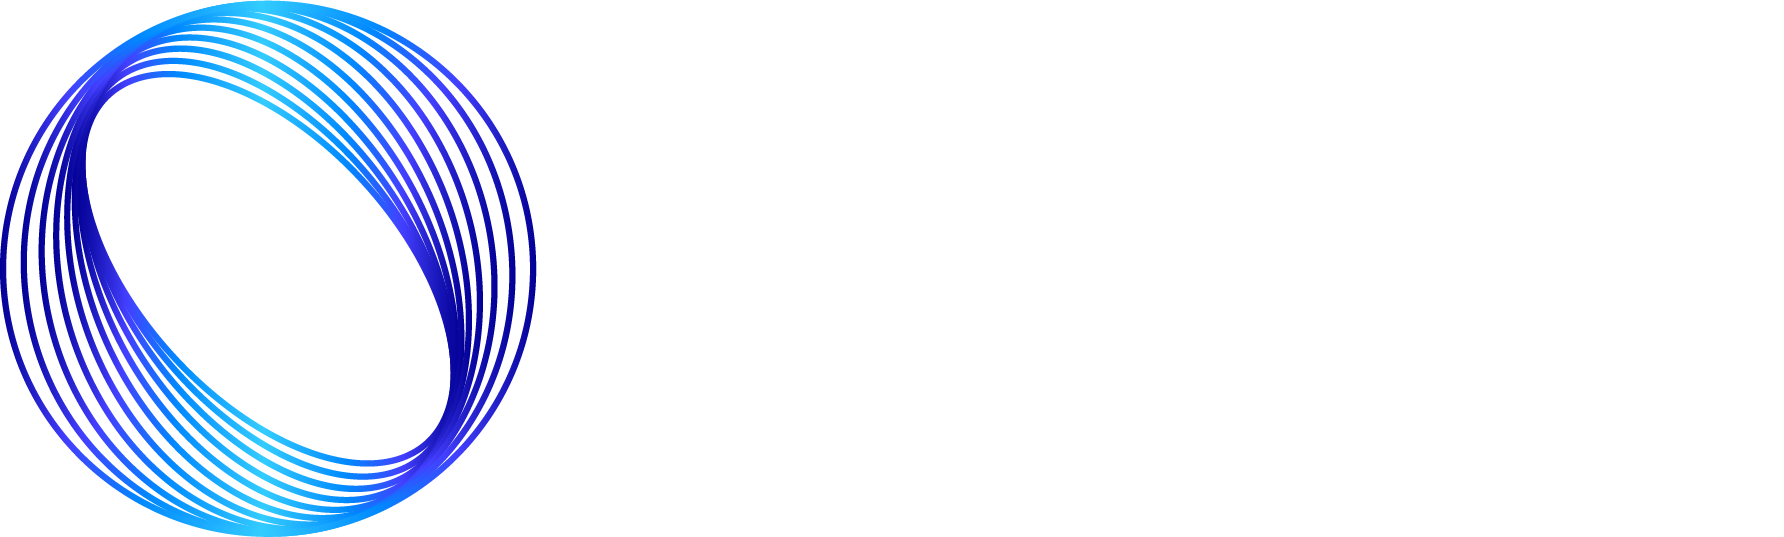 Titan Telecoms